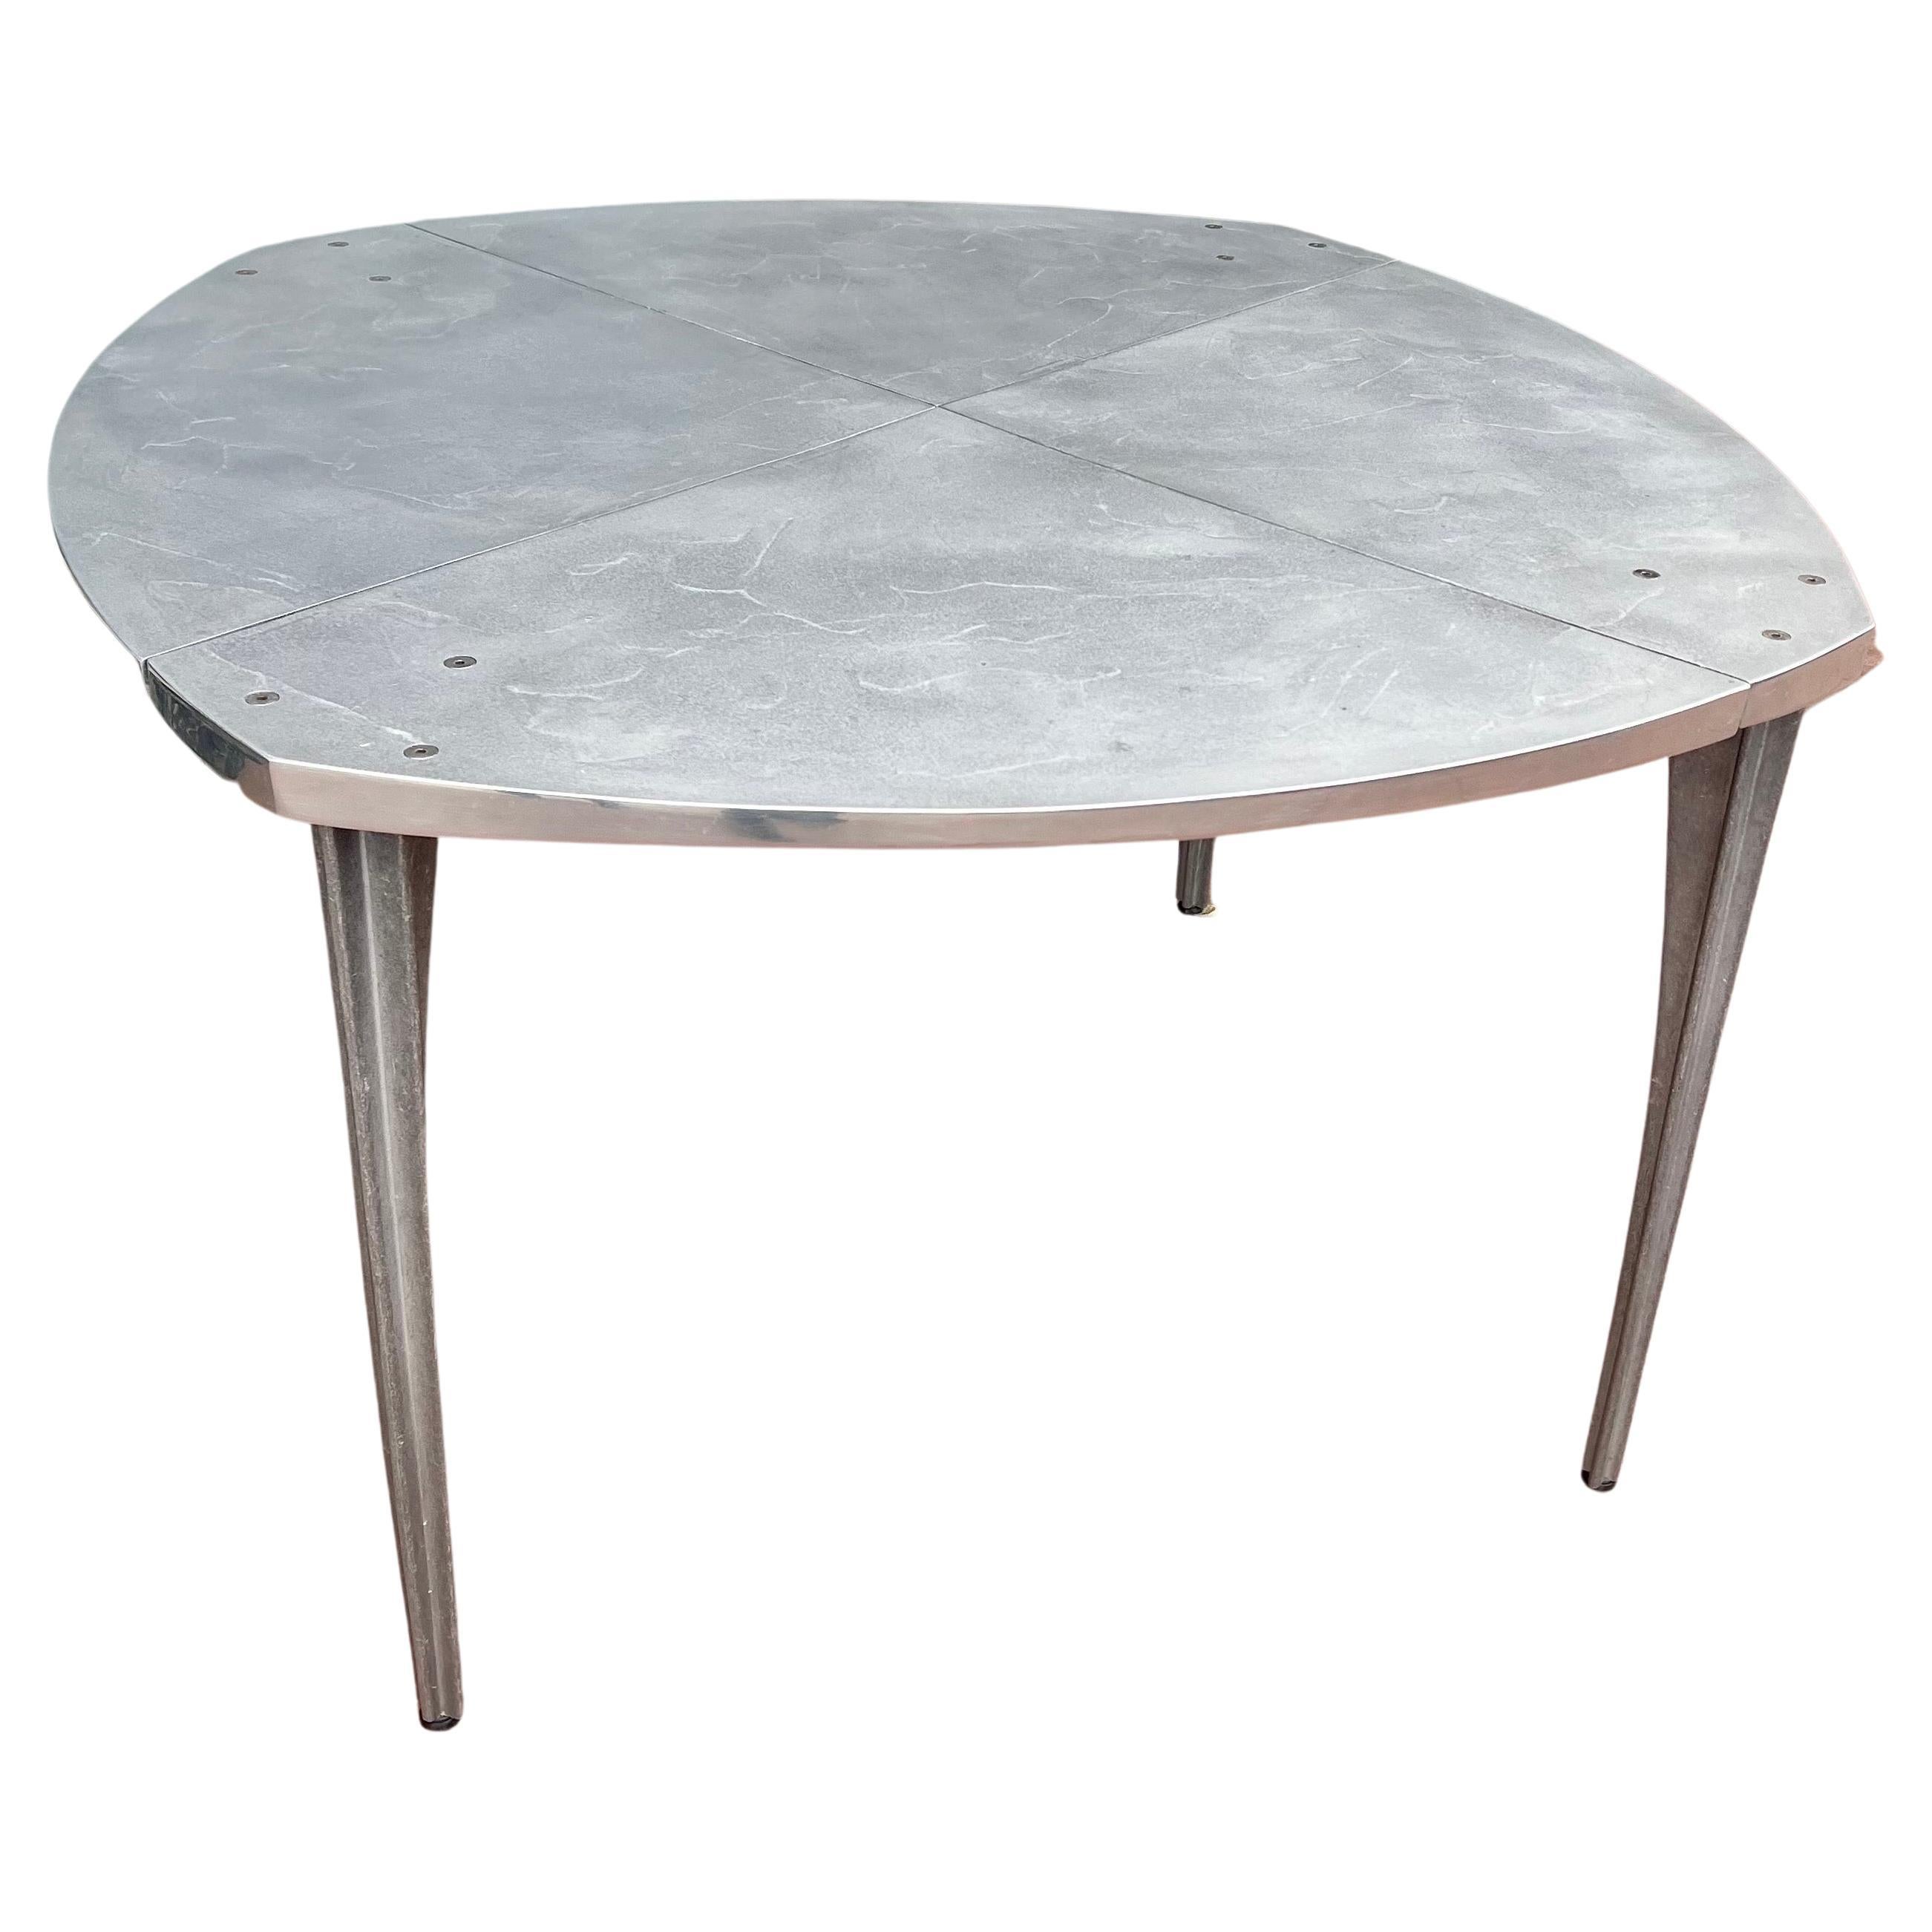 Aluminum Robert Josten Industrial Design Rare Dining Table California Design